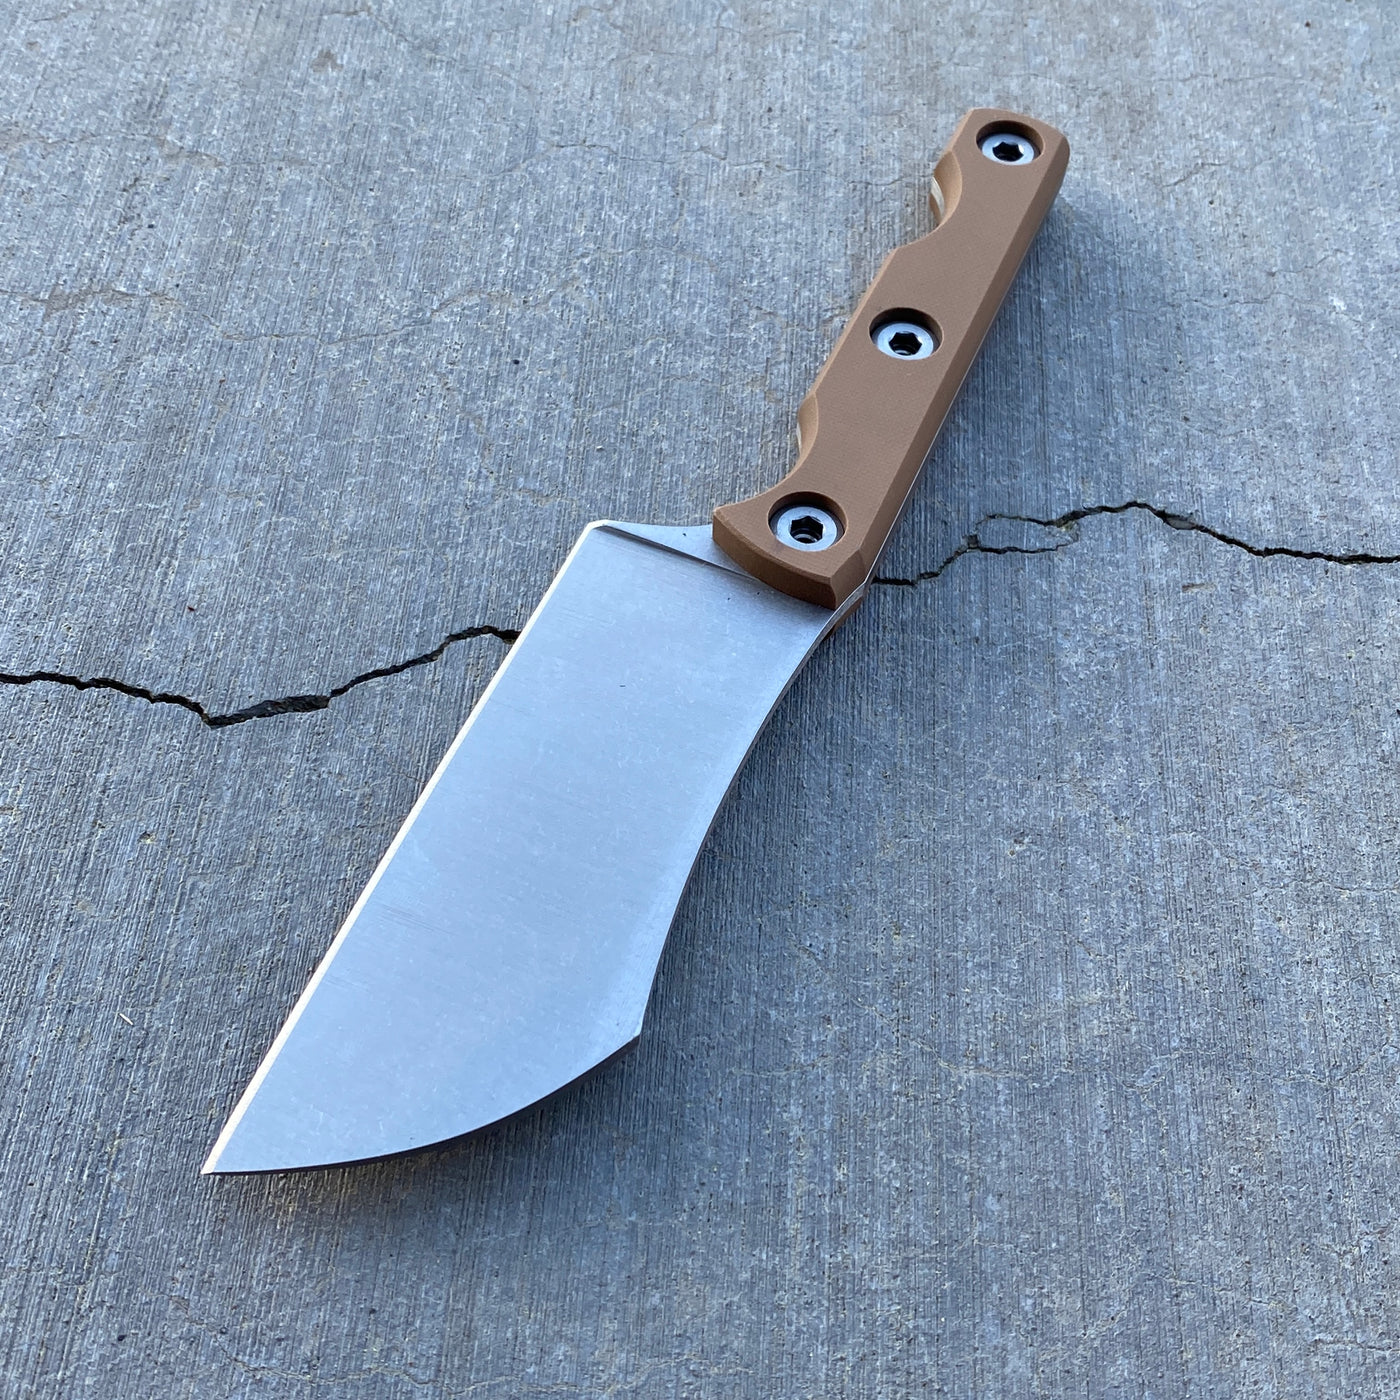 KA Custom Griffon Fixed Blade